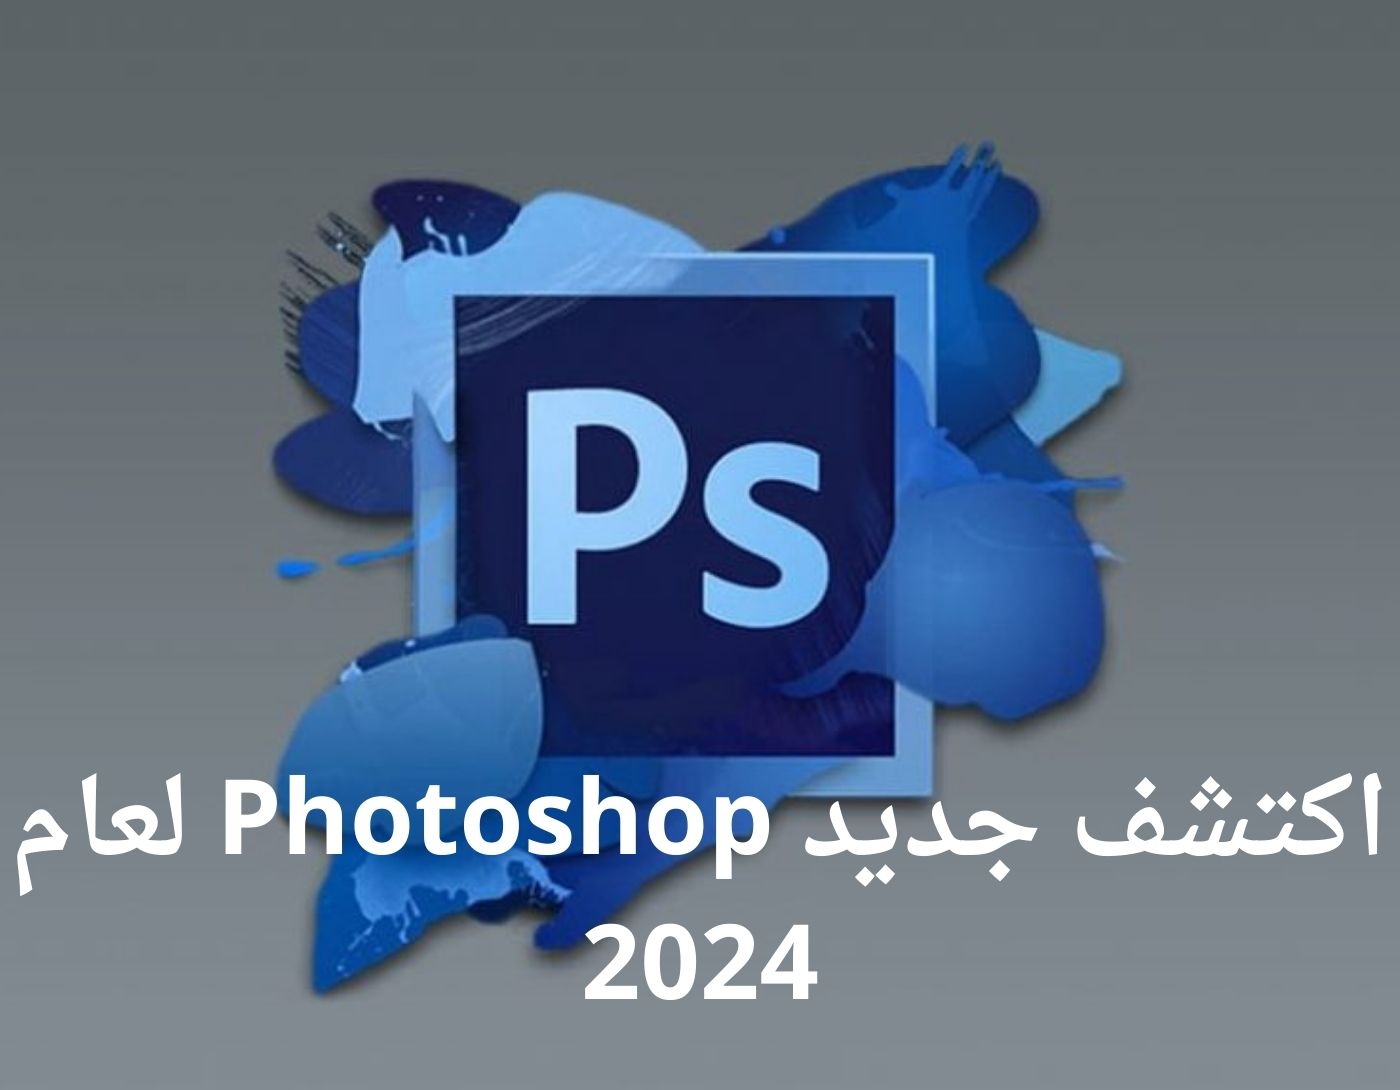 صورة واجهة برنامج Photoshop لعام 2024